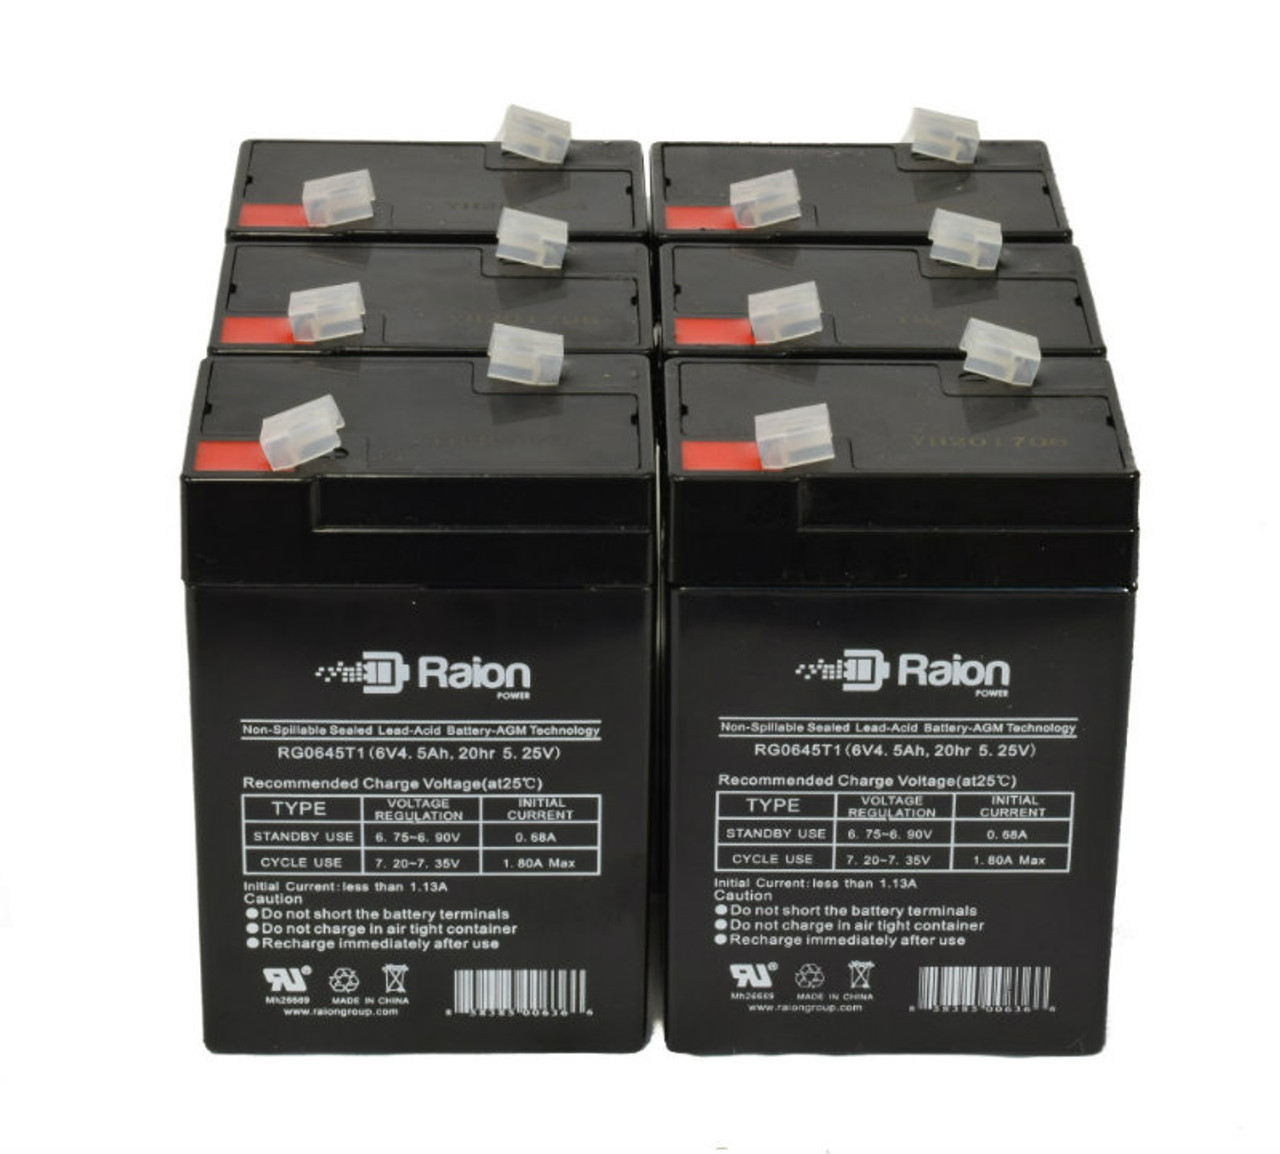 Raion Power 6 Volt 4.5Ah RG0645T1 Replacement Battery for Douglas DG64WL - 6 Pack